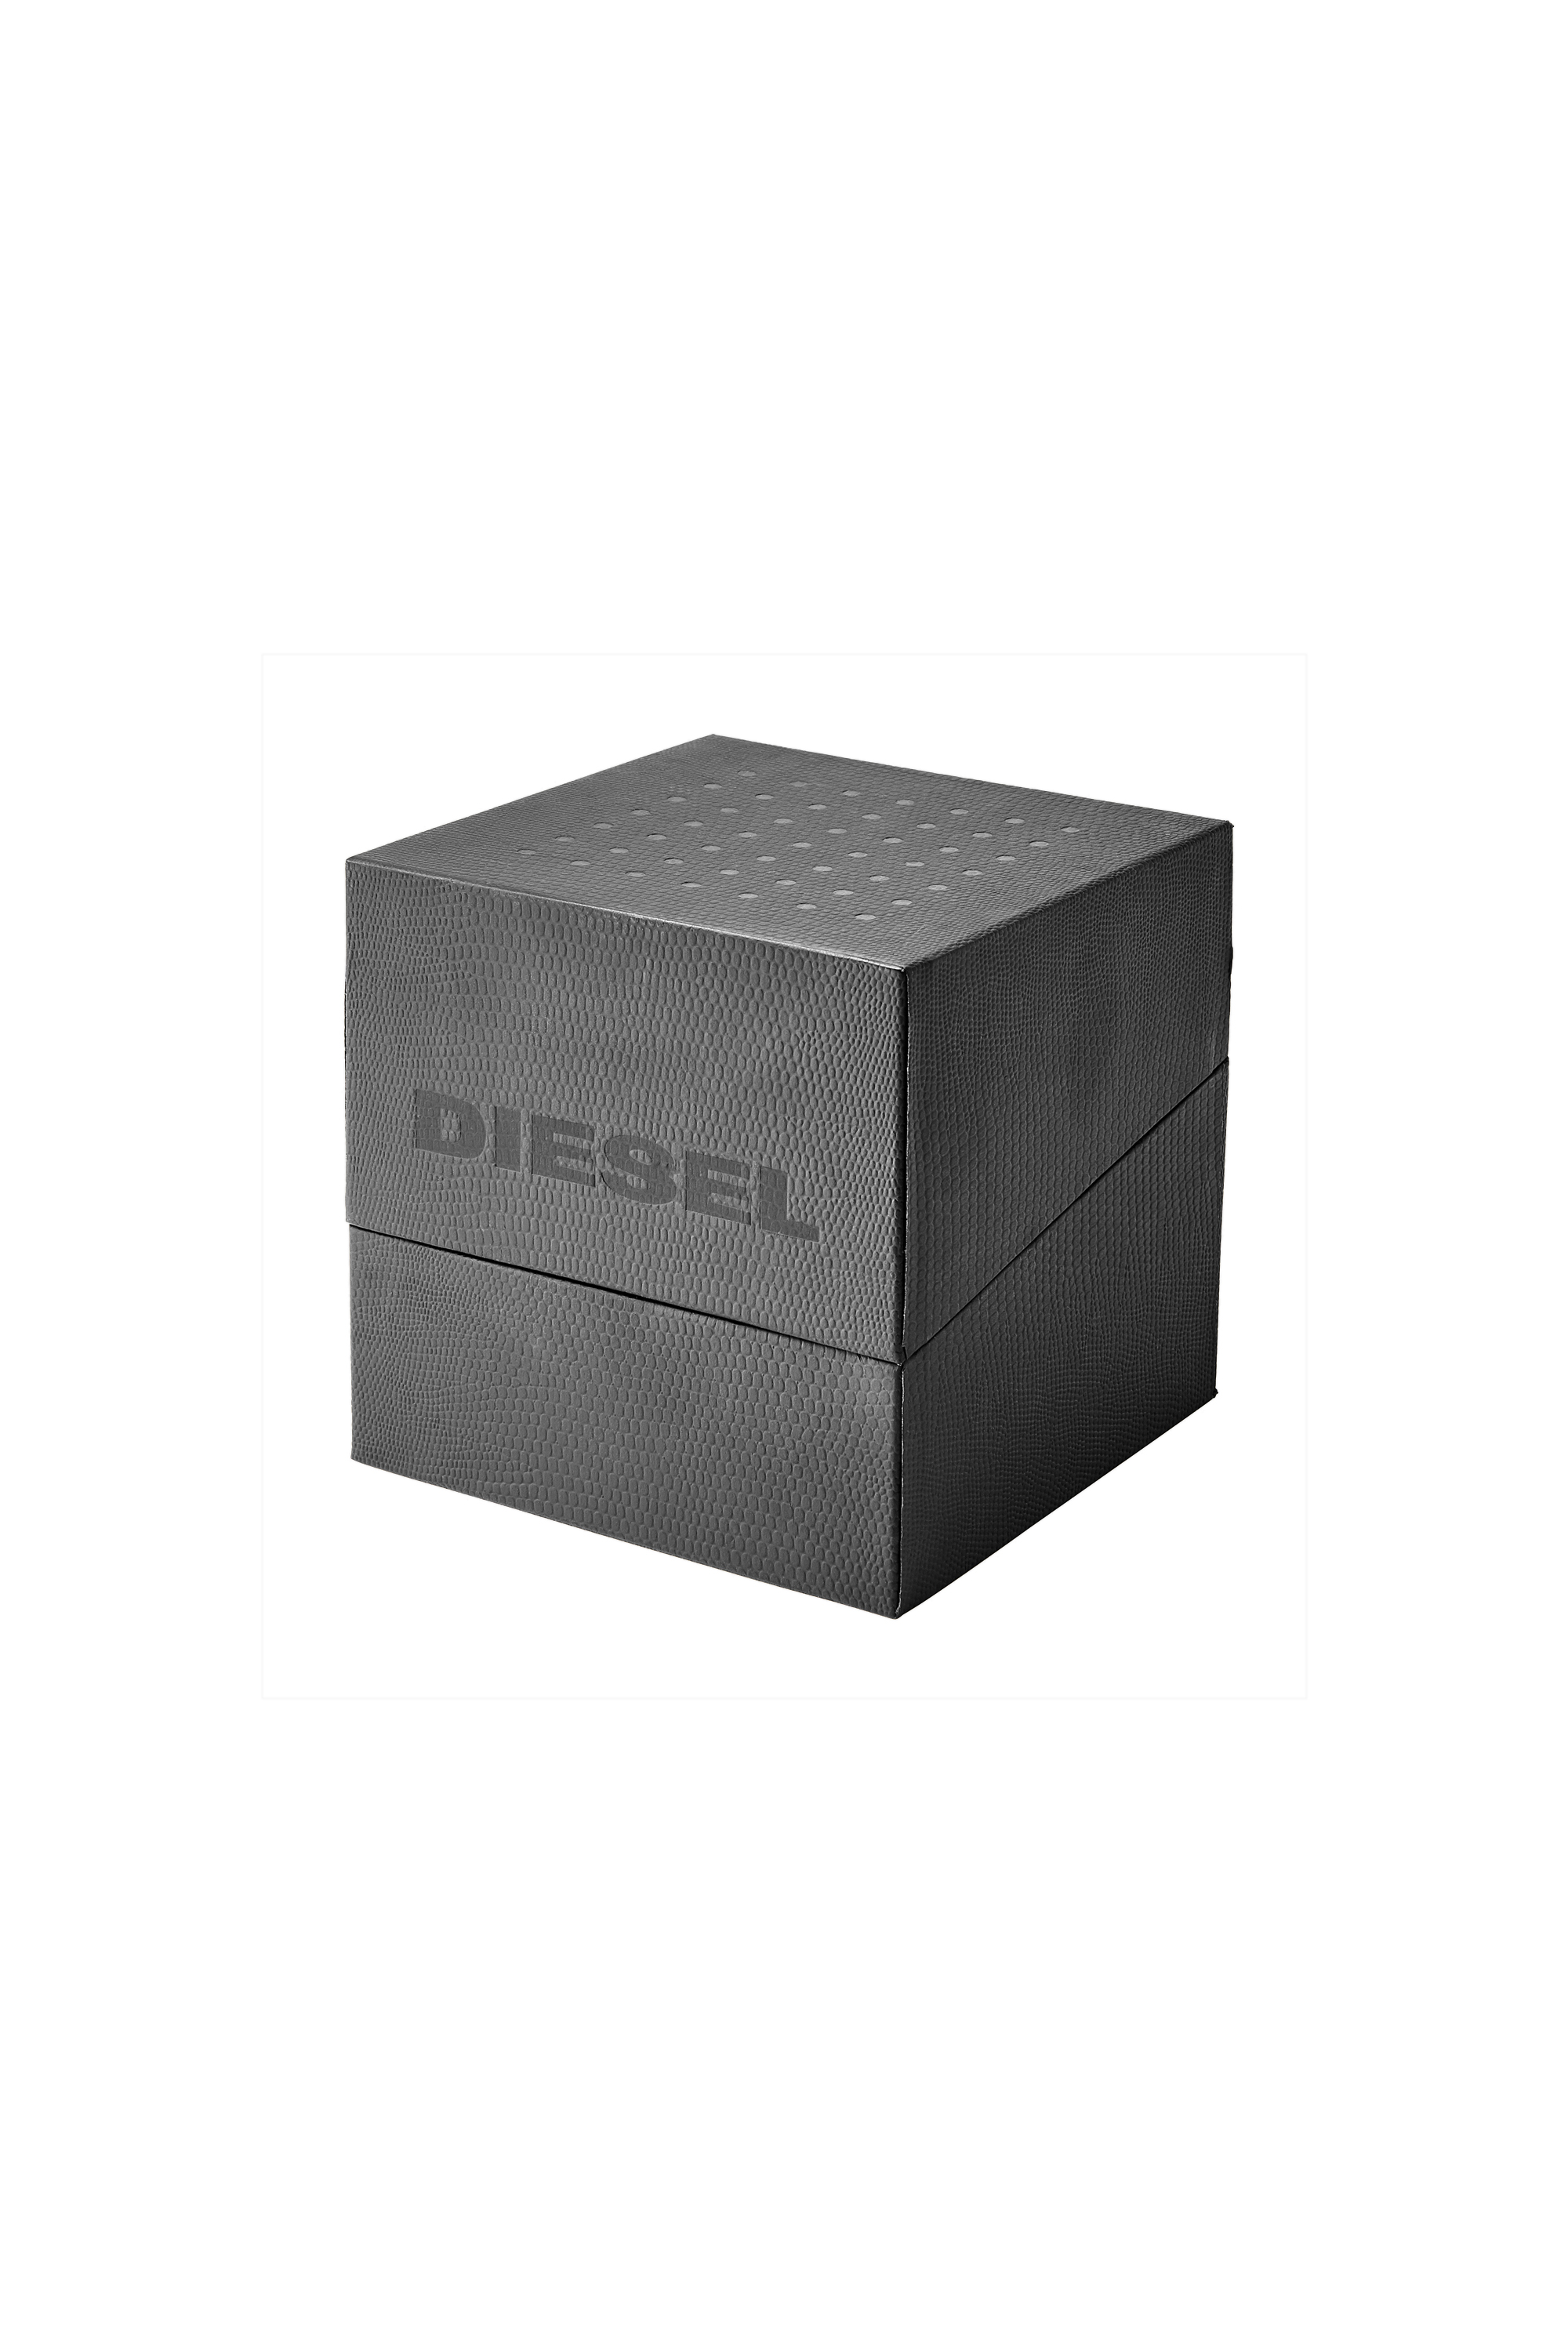 Diesel - DZ7429, Grau - Image 5